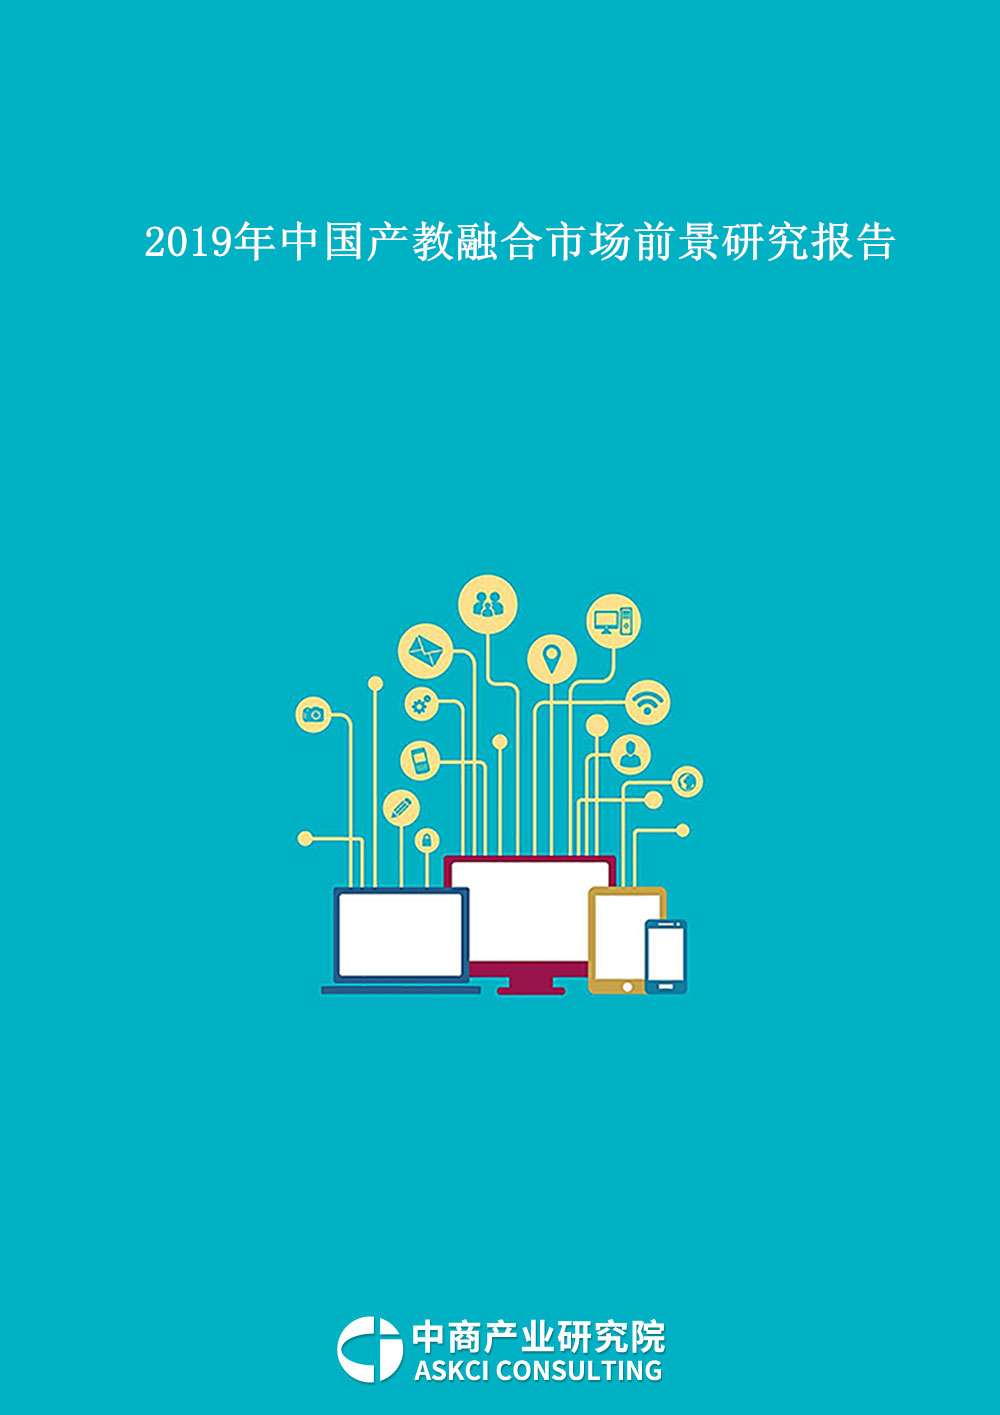 2019年中国产教融合市场前景研究报告